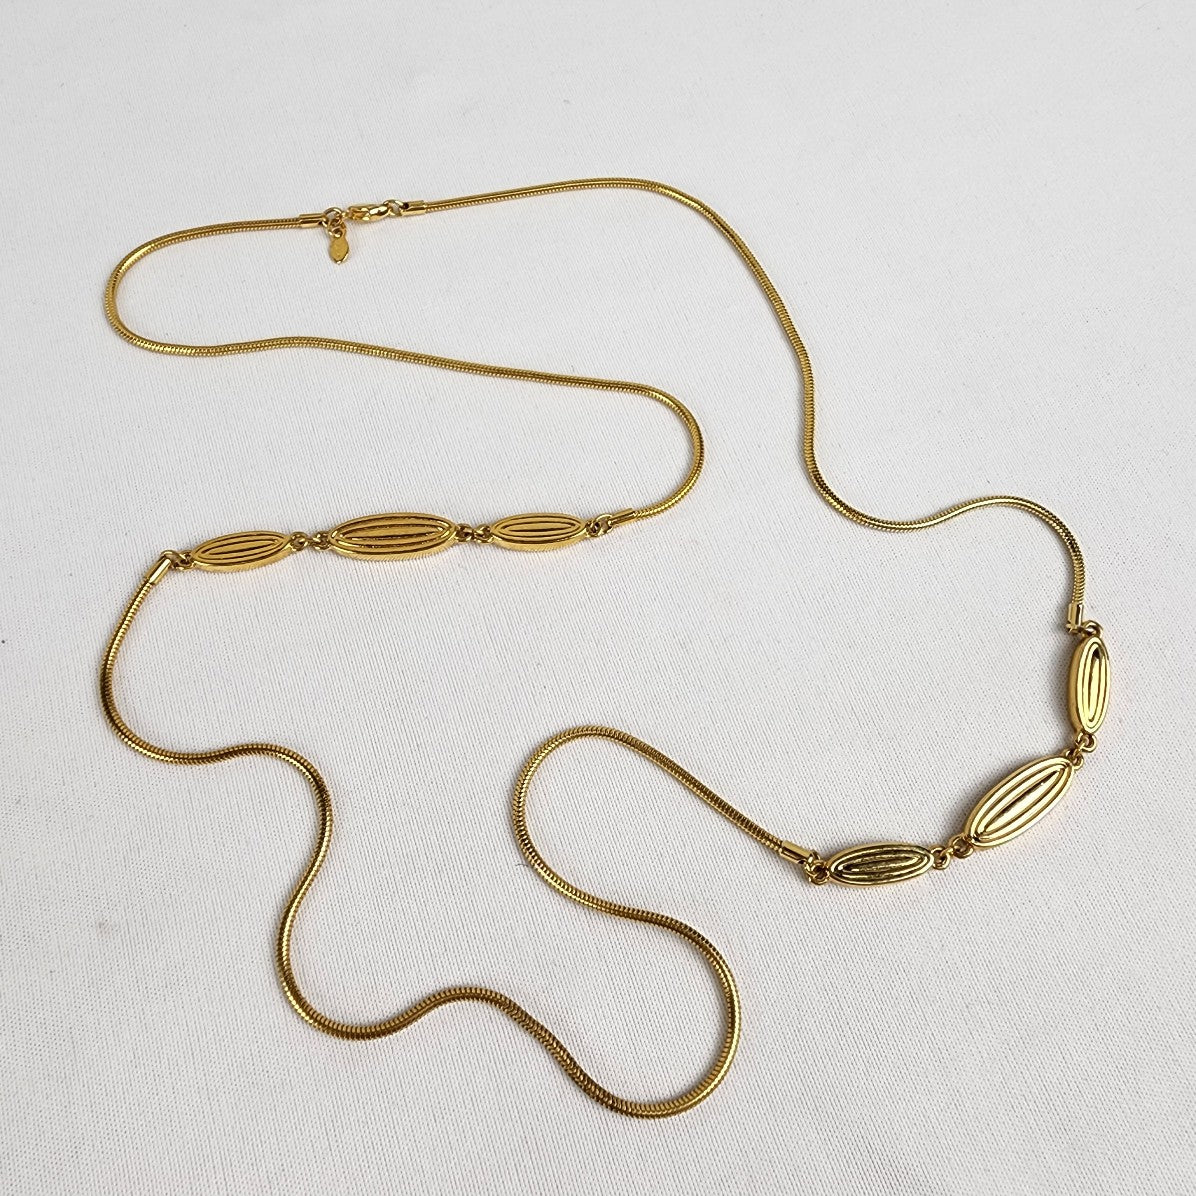 Vintage Monet Gold Tone Chain Necklace